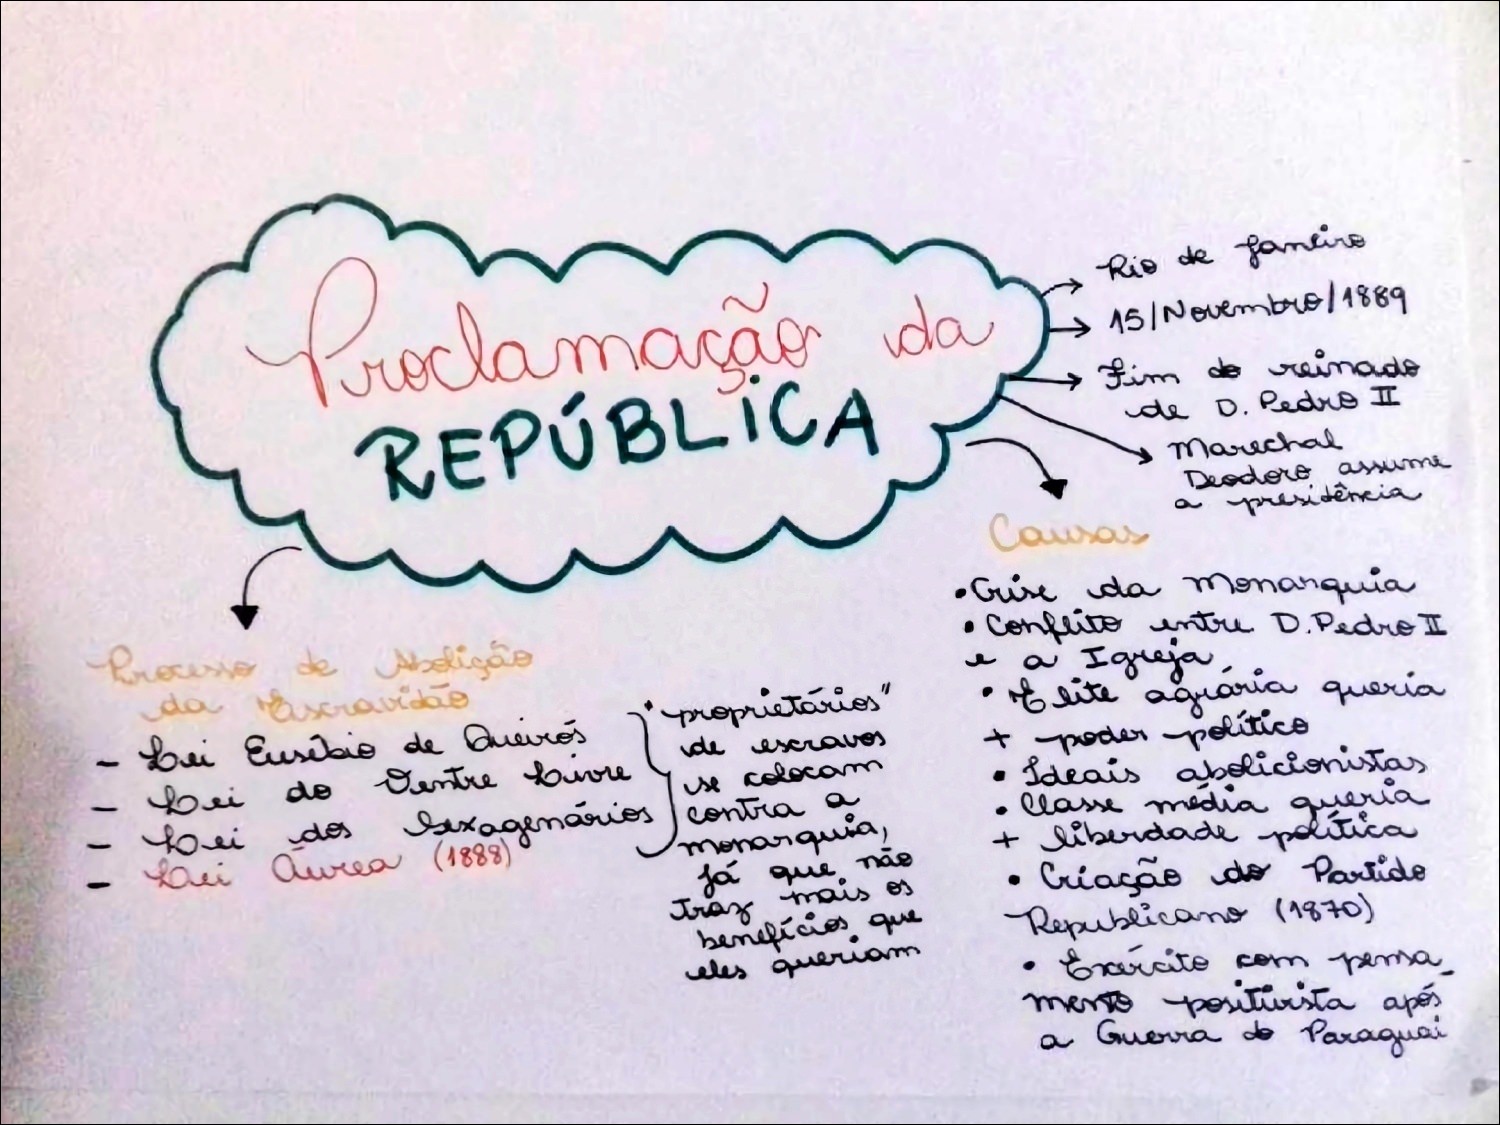 Proclamação da República - História Enem